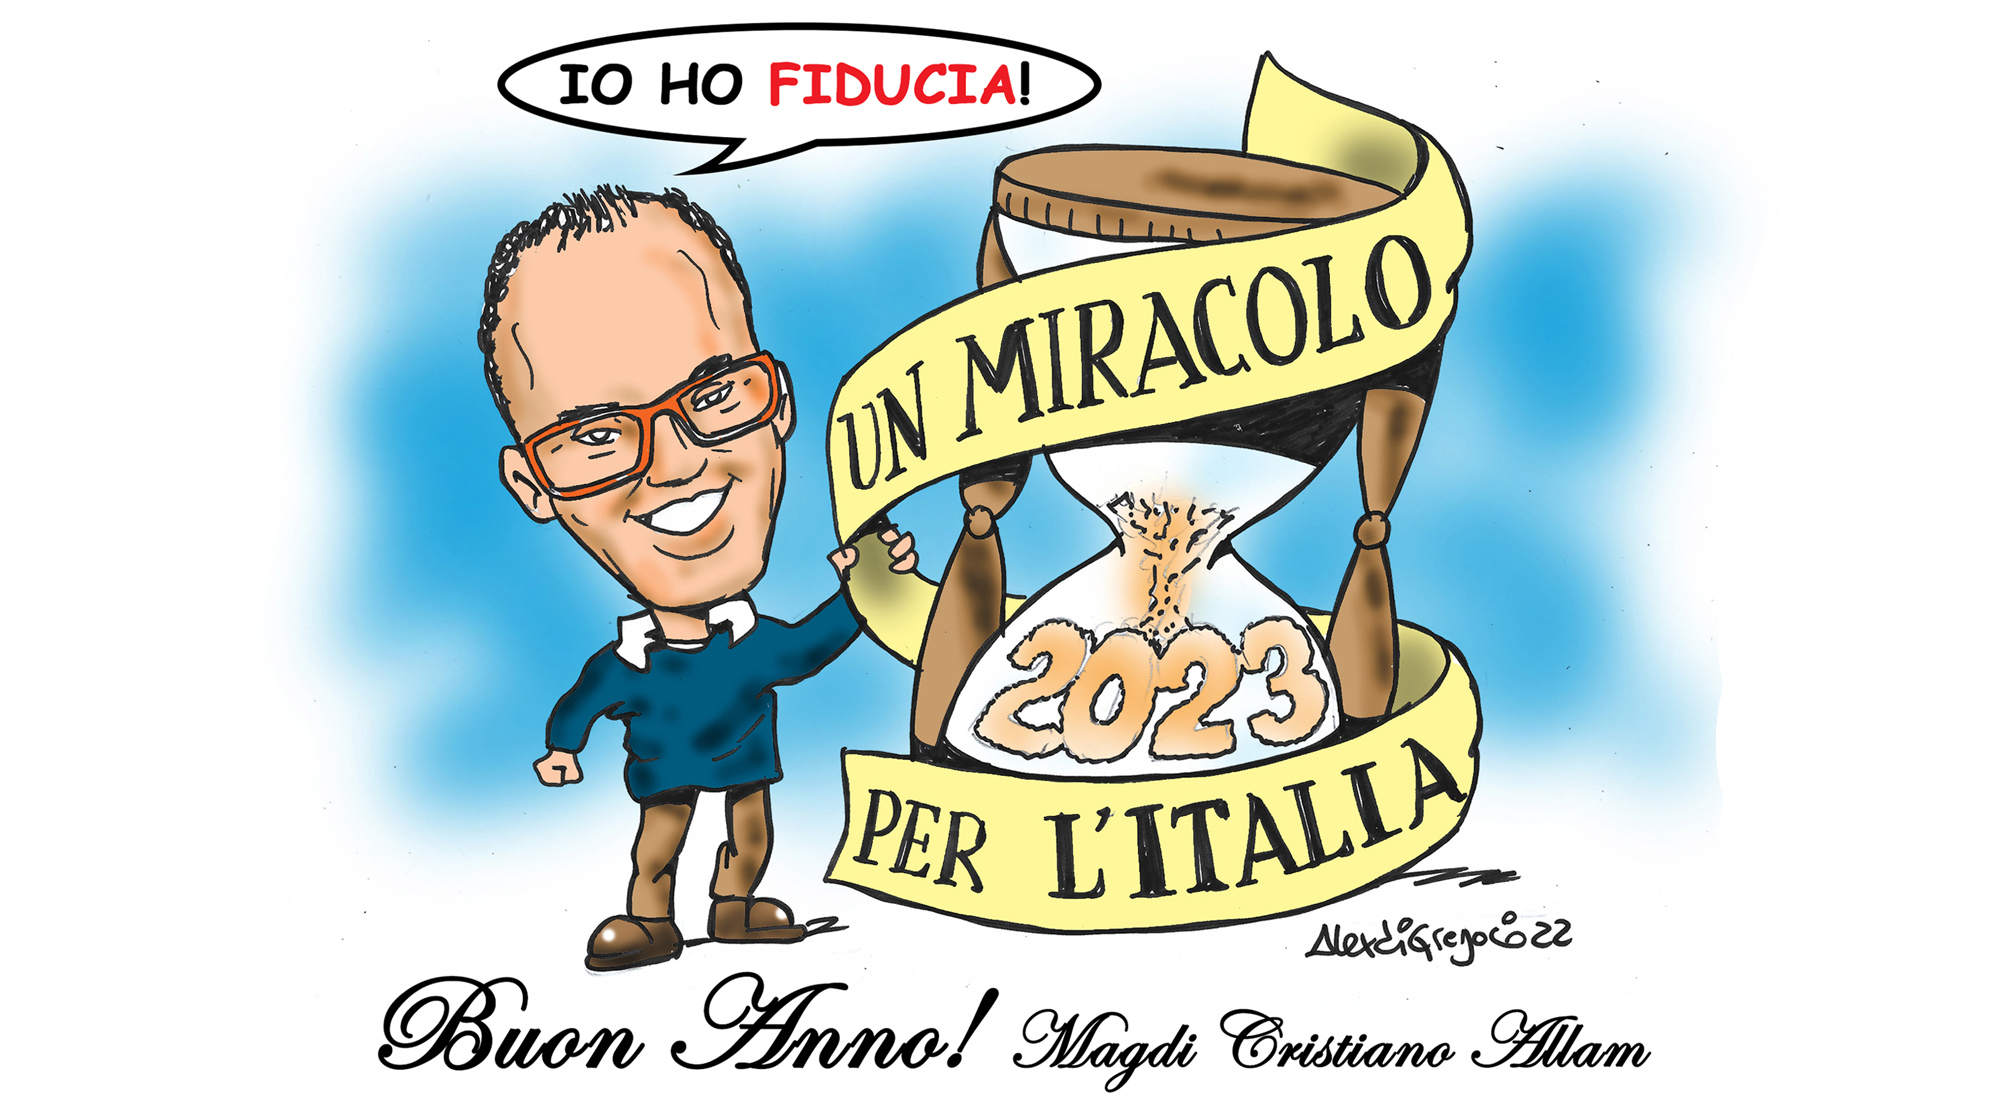 MAGDI CRISTIANO ALLAM: “Buon Anno a tutti gli italiani con l’augurio di «un miracolo per l’Italia» per far rinascere la nostra civiltà, salvare gli italiani, riscattare l’Italia “